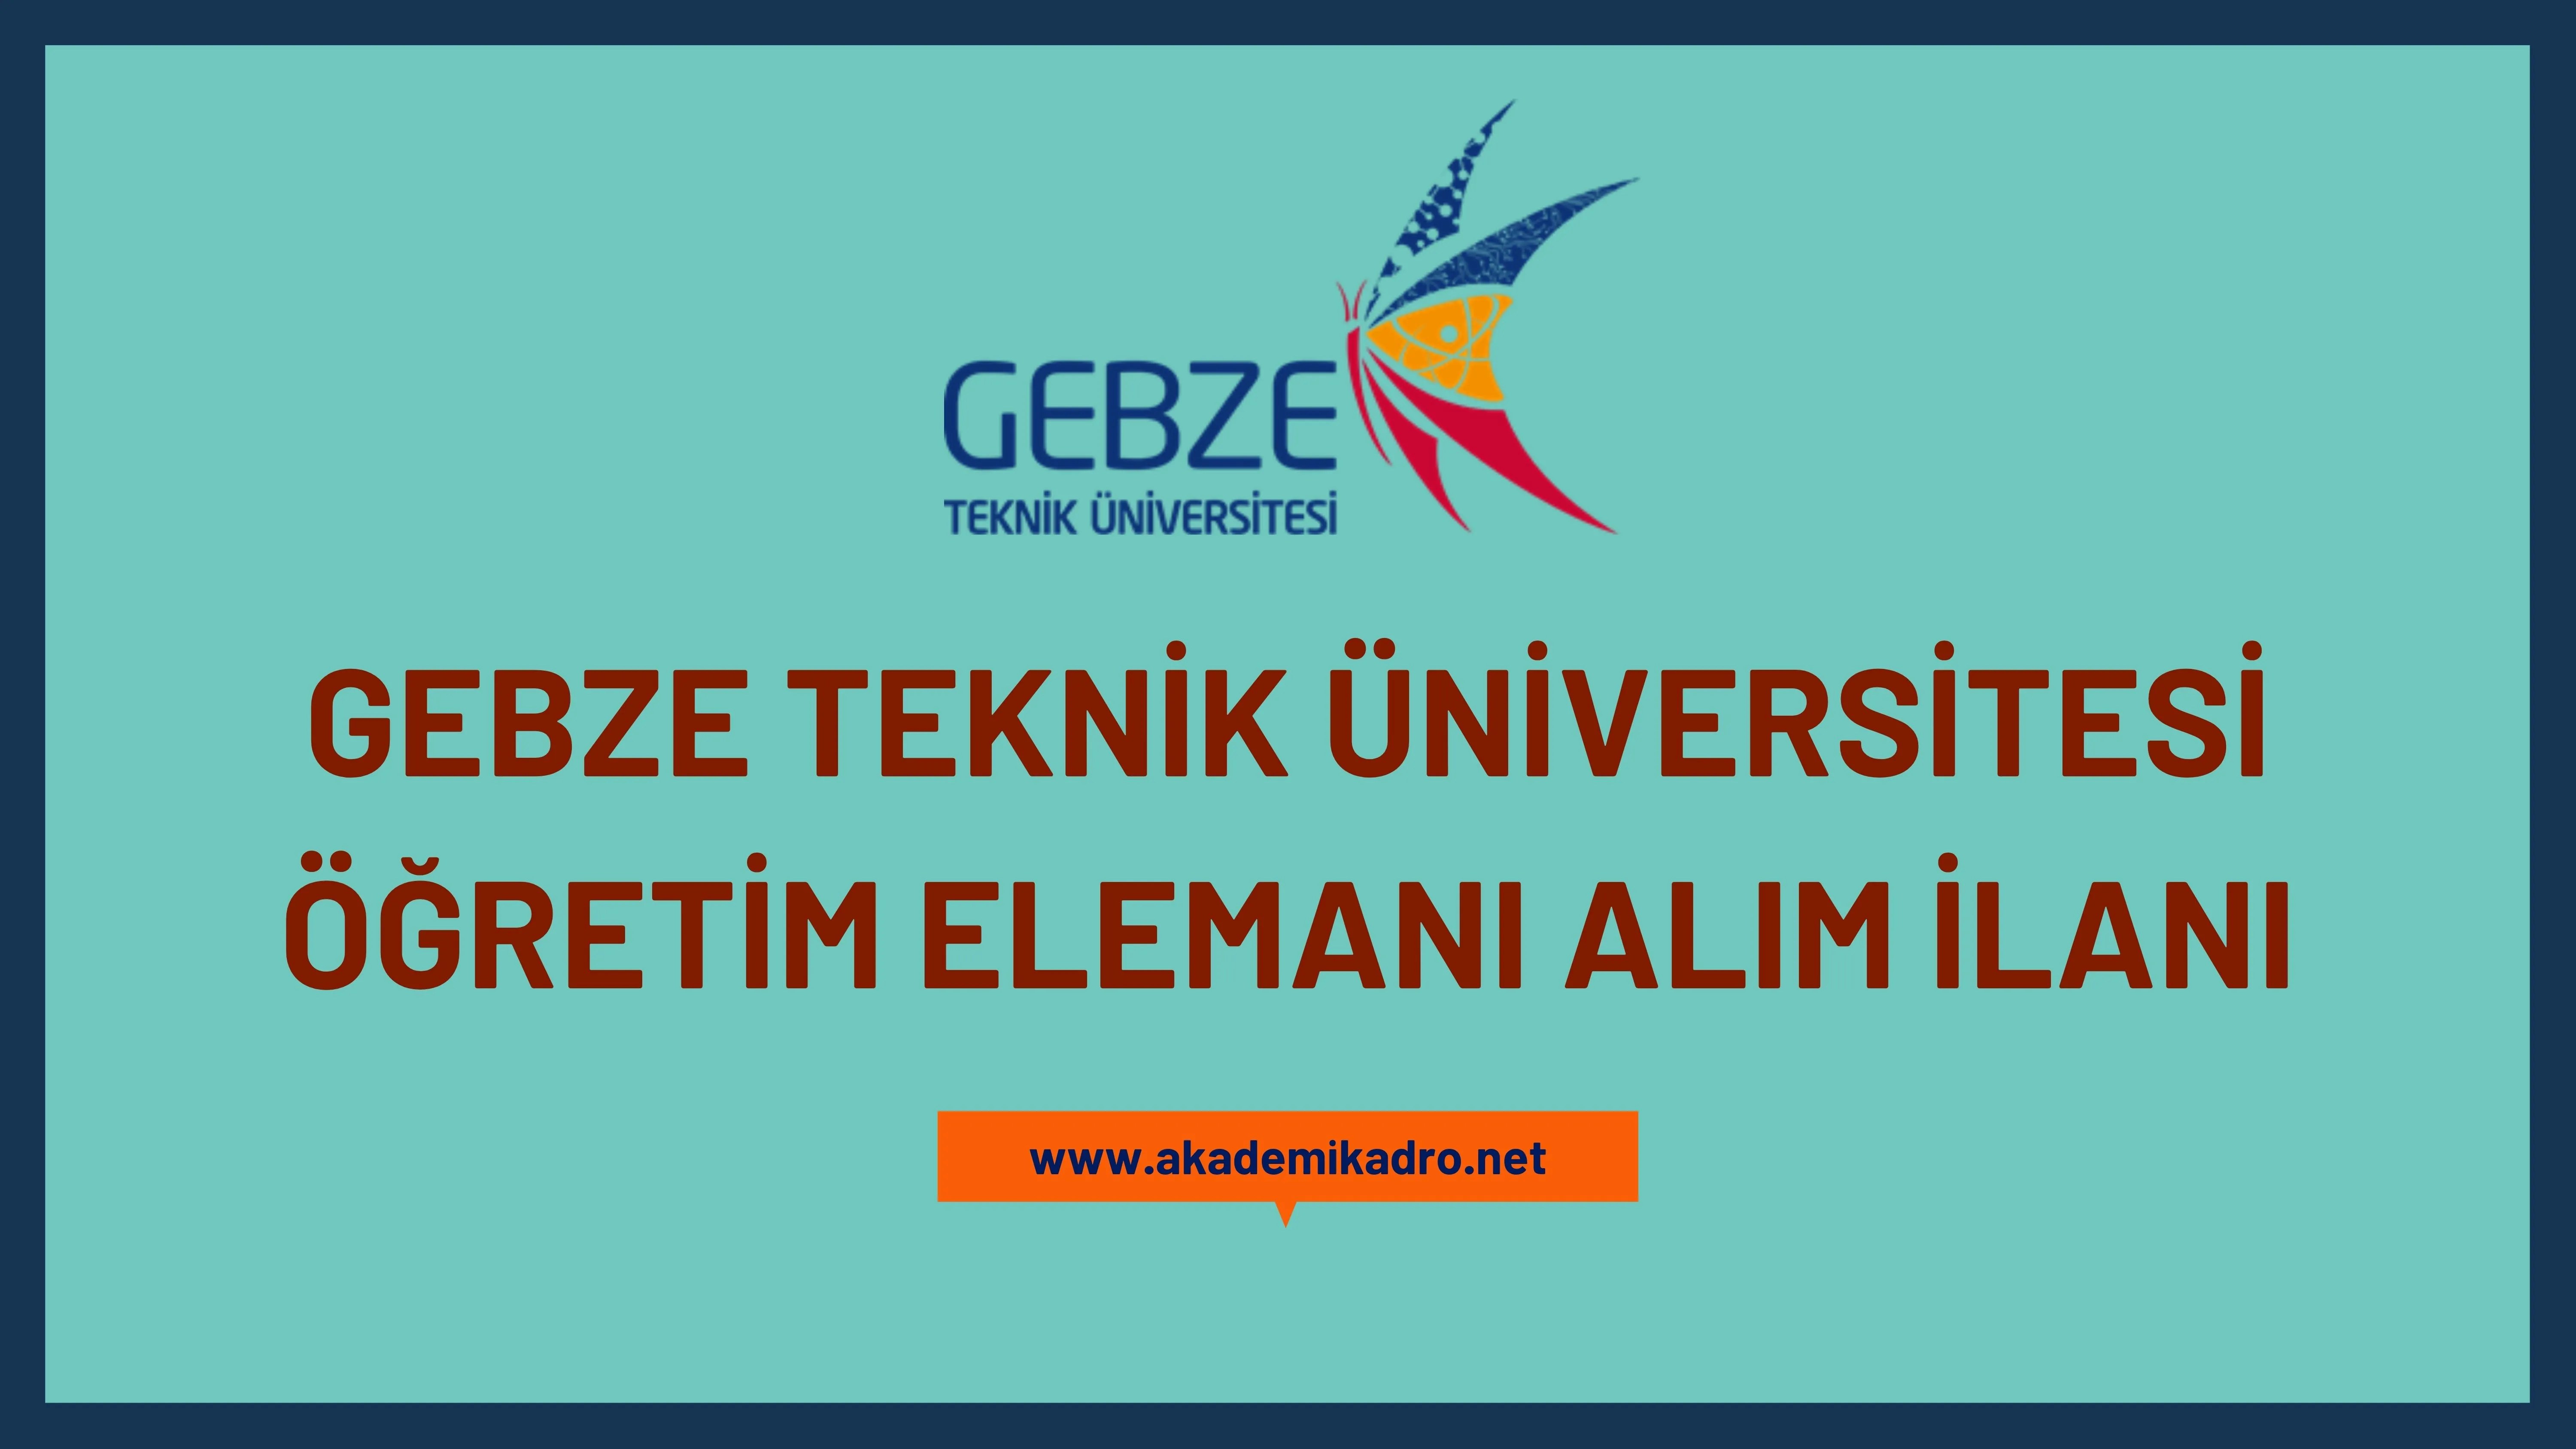 Gebze Teknik Üniversitesi 11 öğretim üyesi ve 4 Araştırma görevlisi alacaktır. Son başvuru tarihi 13 Kasım 2023